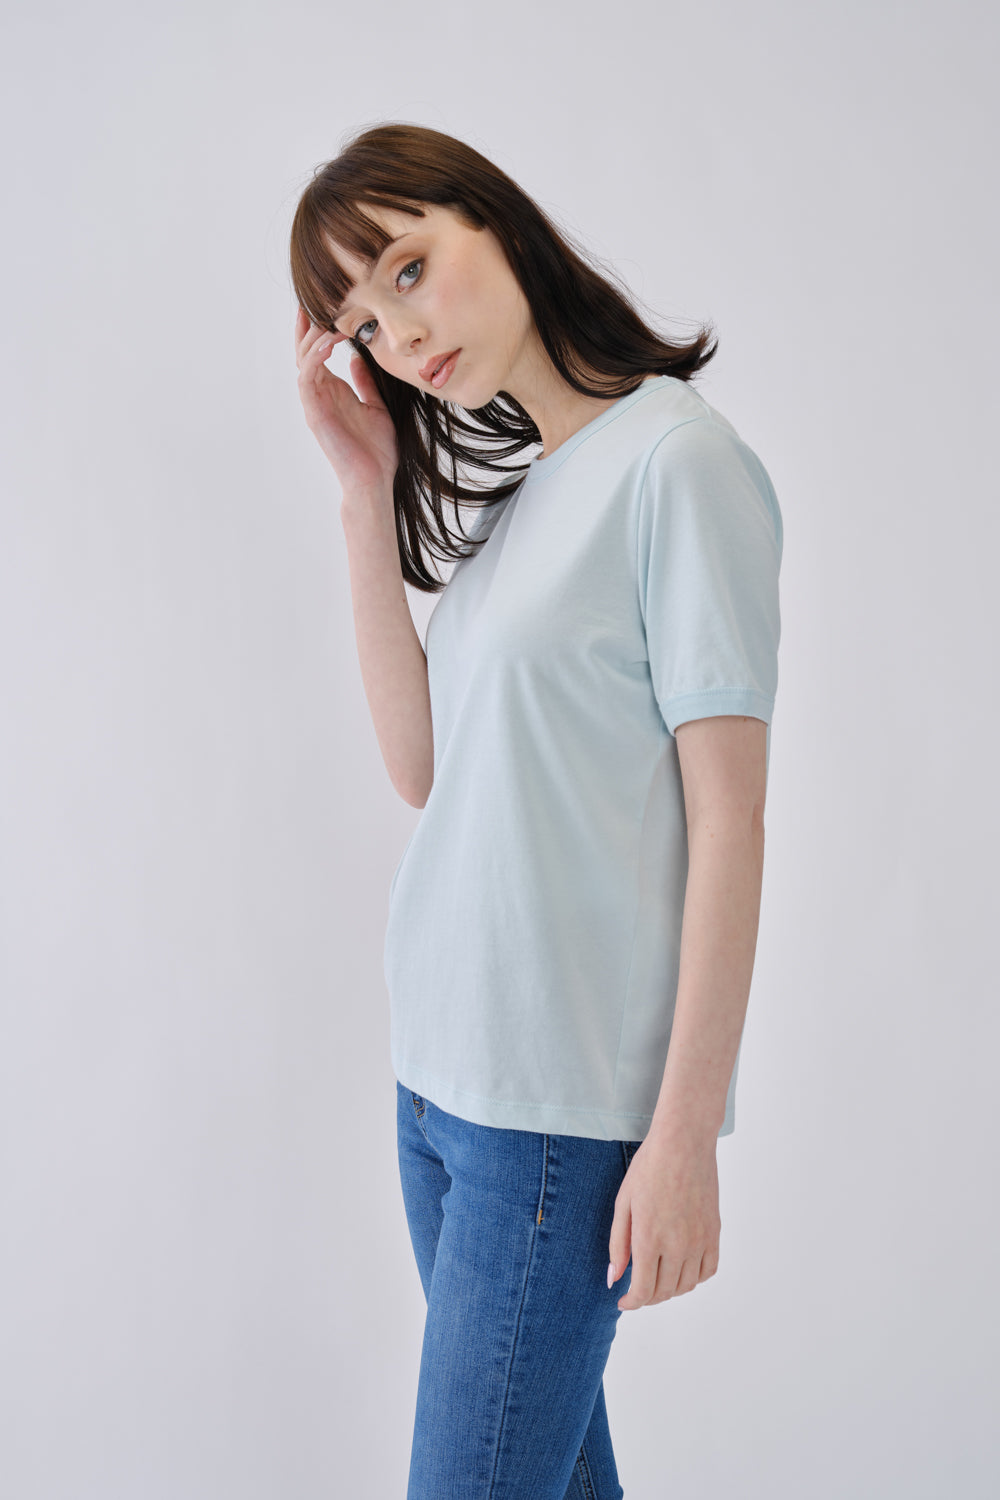 160/410 - T-shirt Clássica Mulher